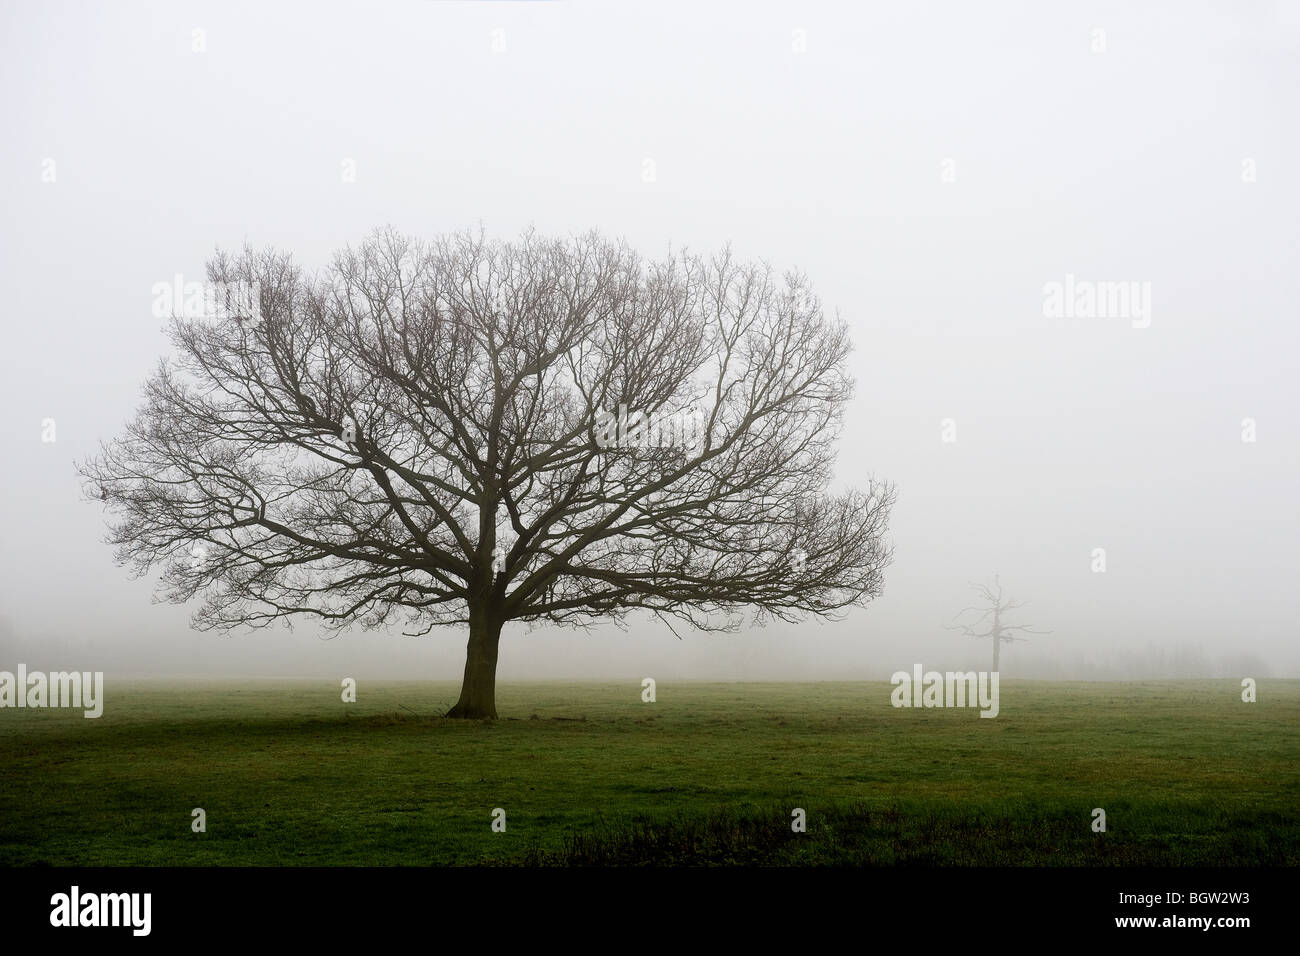 Trees in a misty field in Essex. Stock Photo